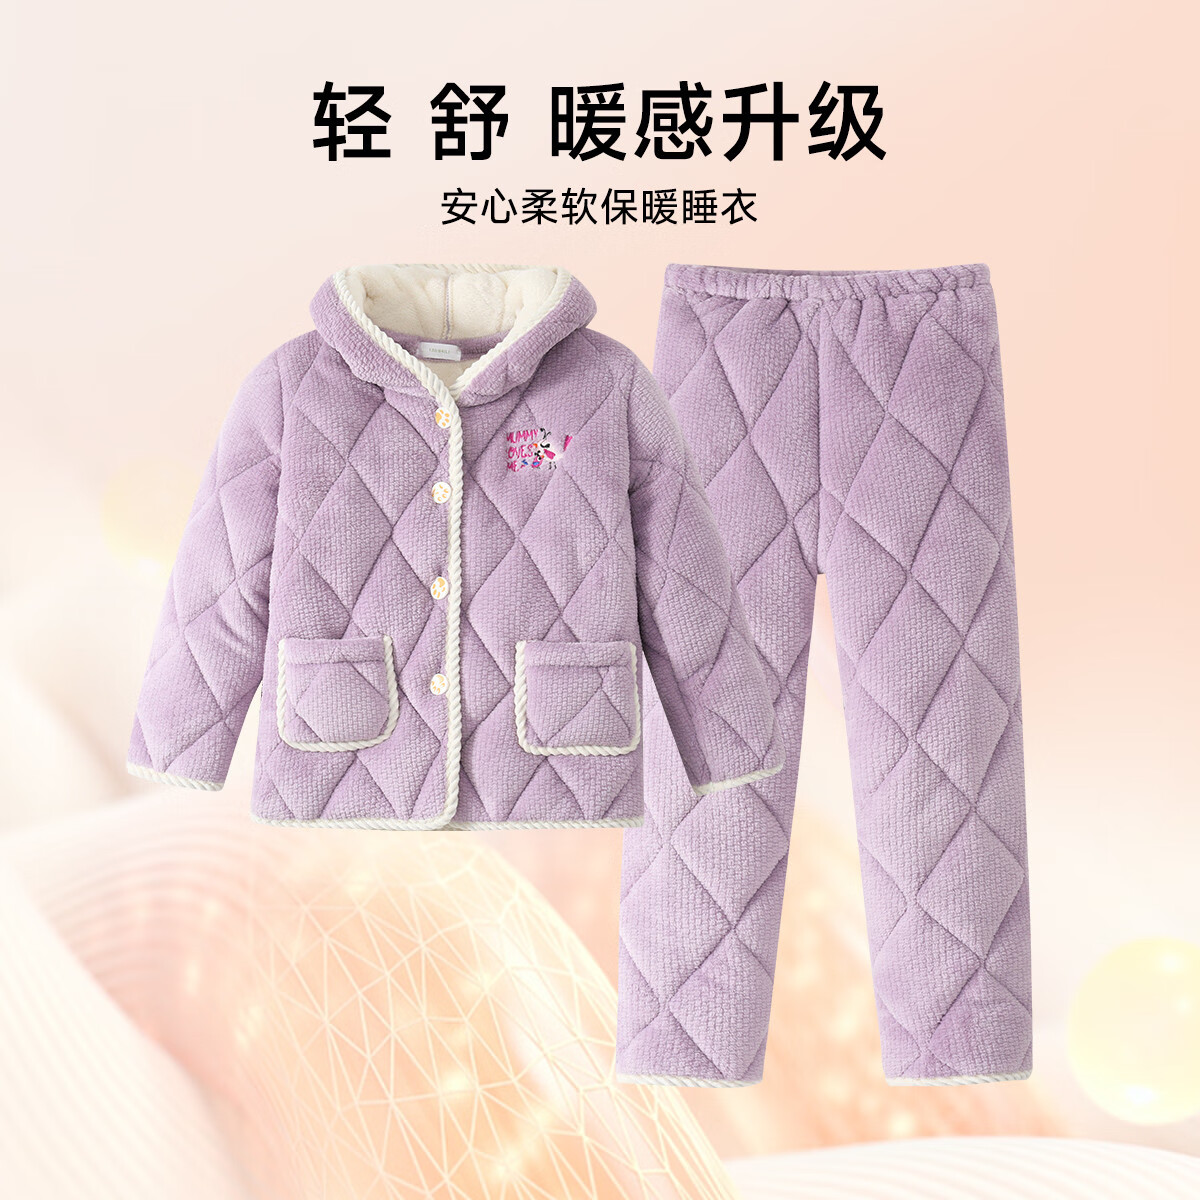 GOSO「三层夹棉加厚」儿童睡衣家居服套装 紫色 XL物有所值吗？评测报告来了！